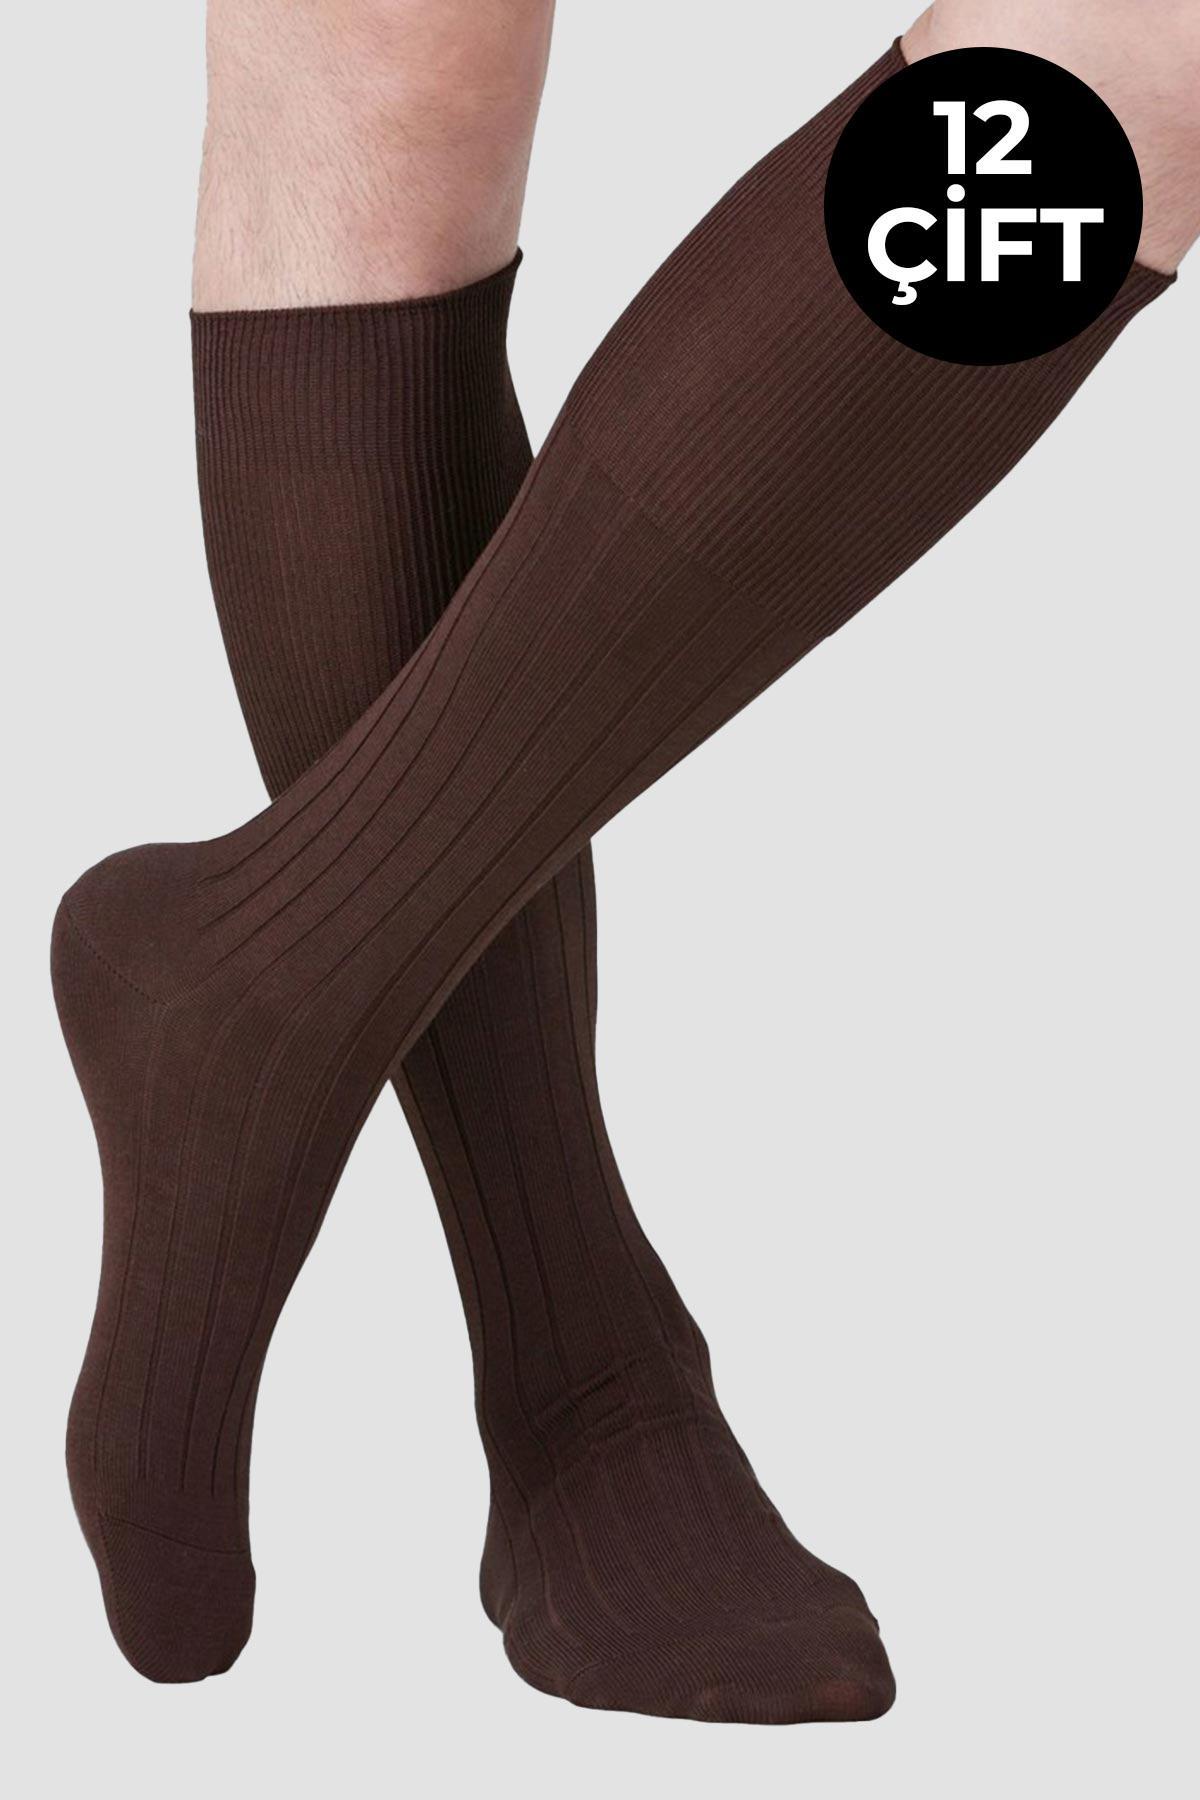 Socksmax Kadın Pamuklu Kışlık 12 Çift Kahverengi Diz Altı Çorap - SS-DIZALTI